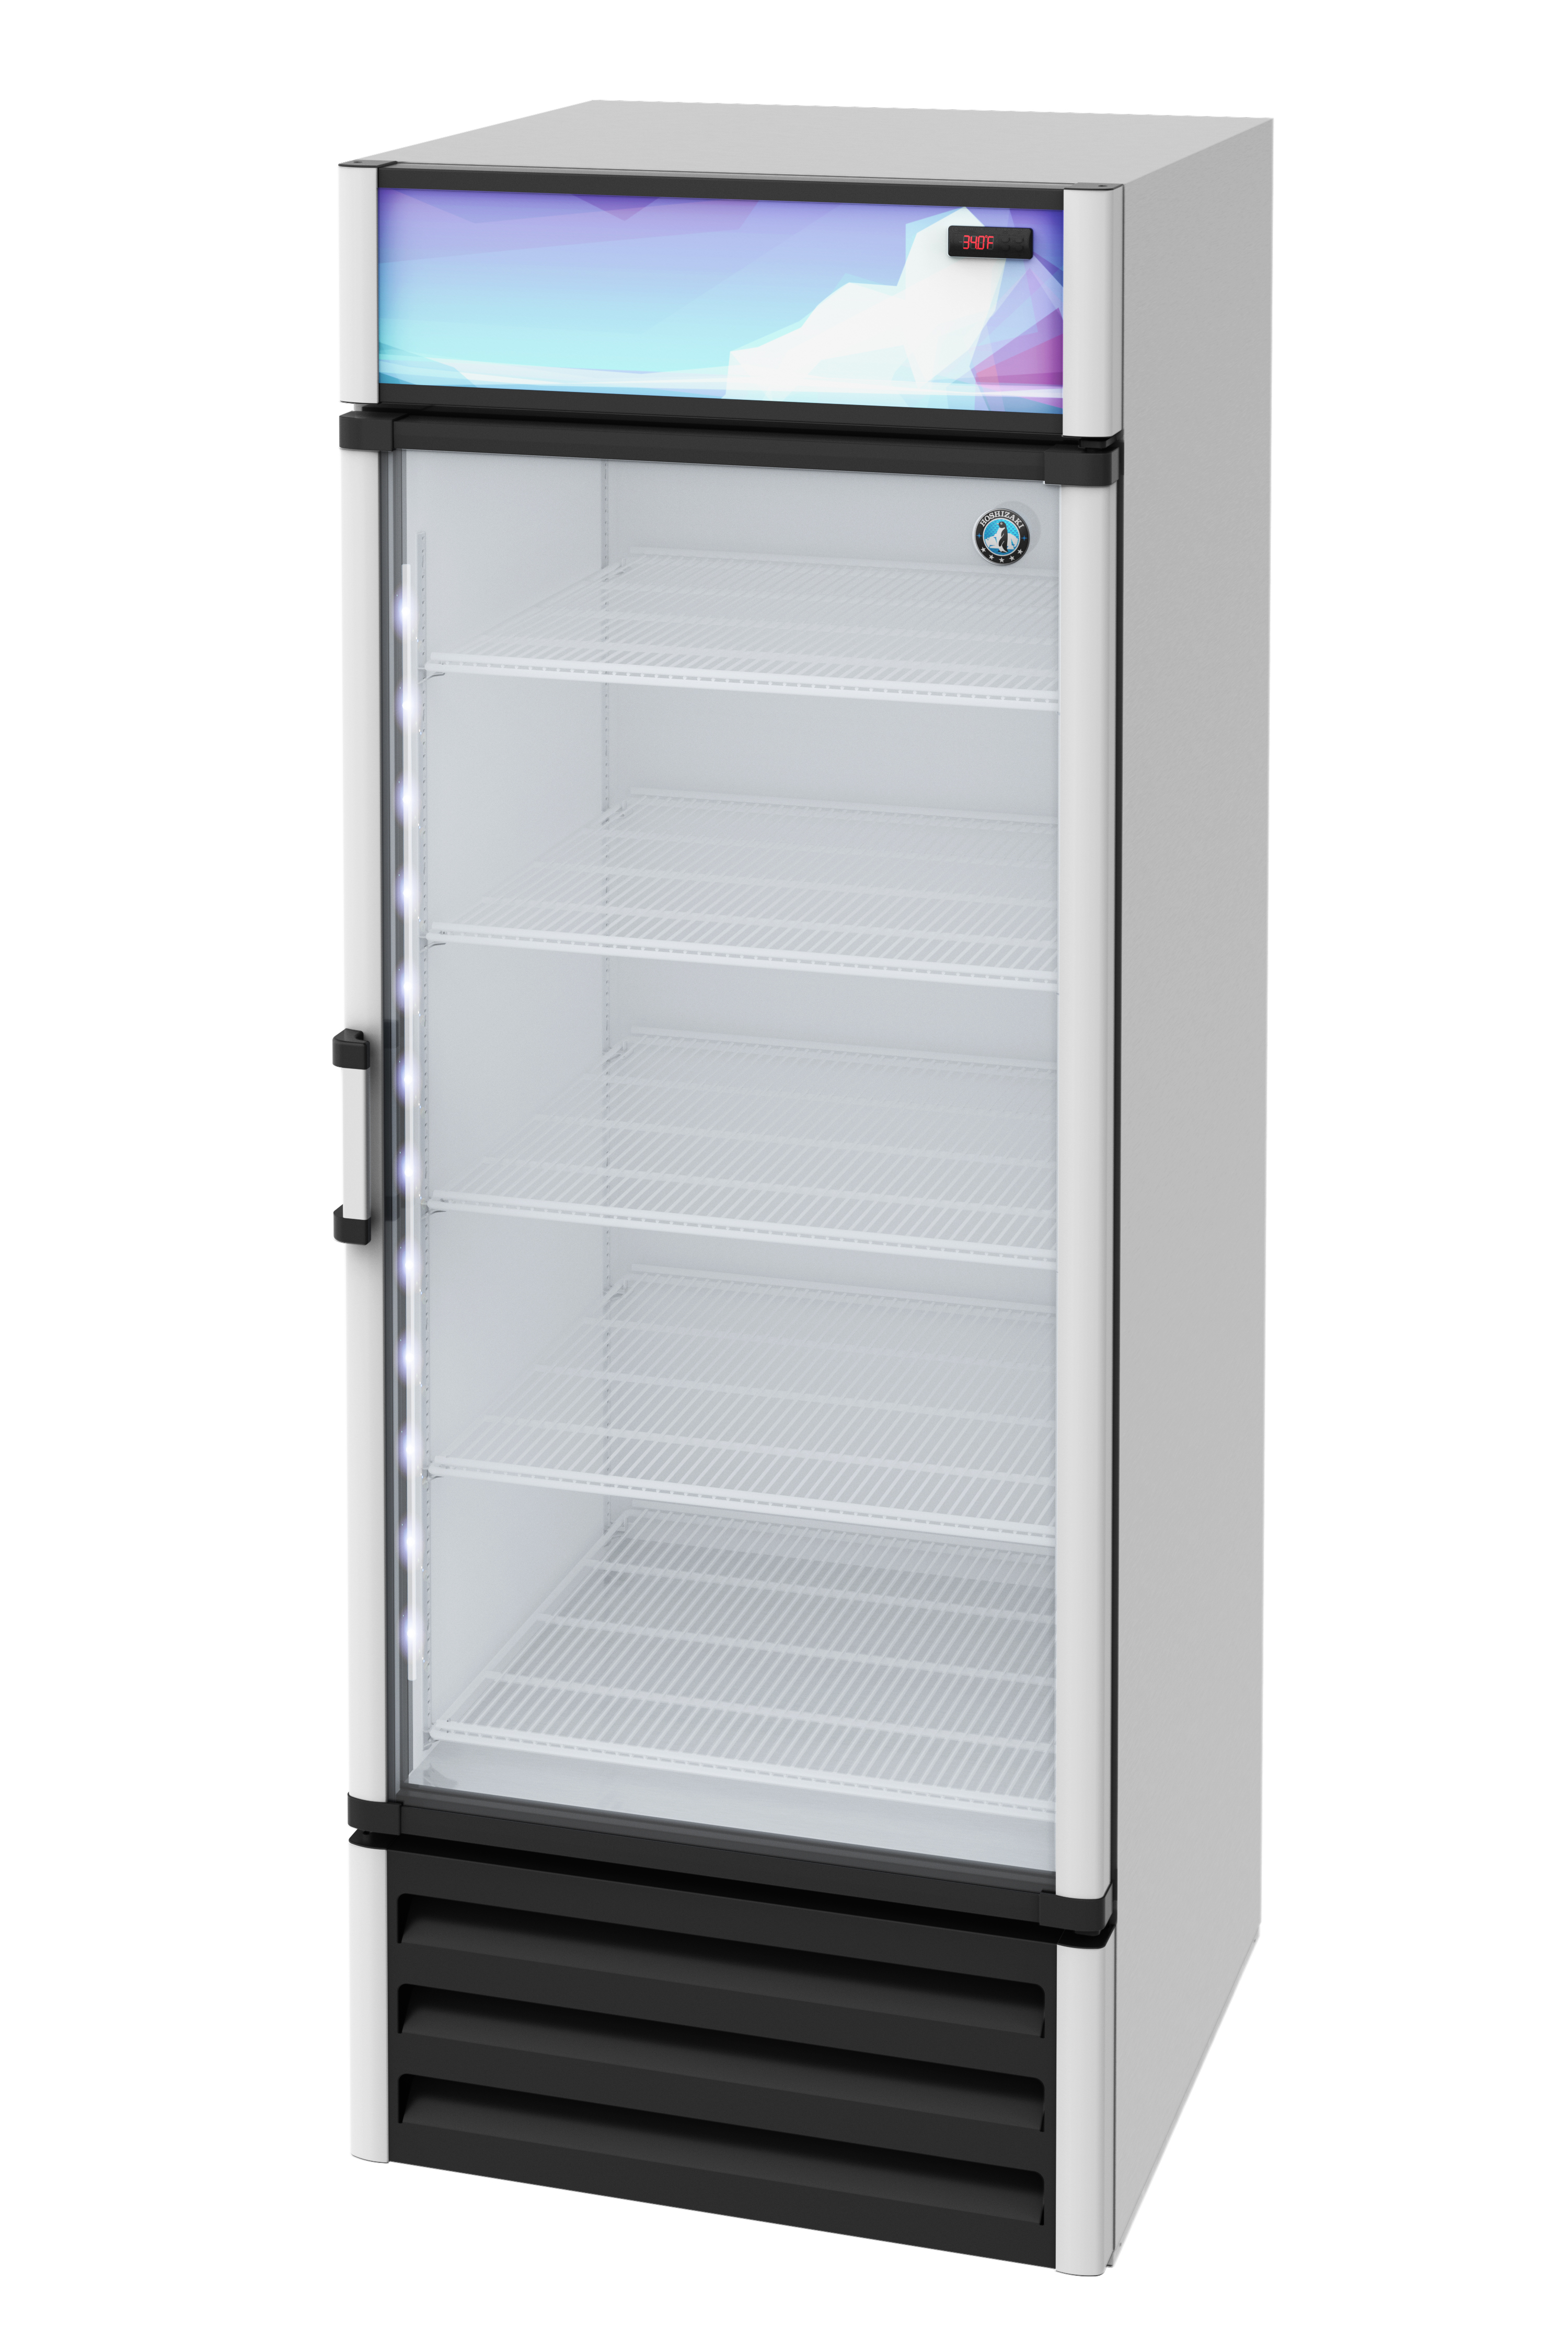 RM-26, Refrigerator, Single Section Glass Door Merchandiser